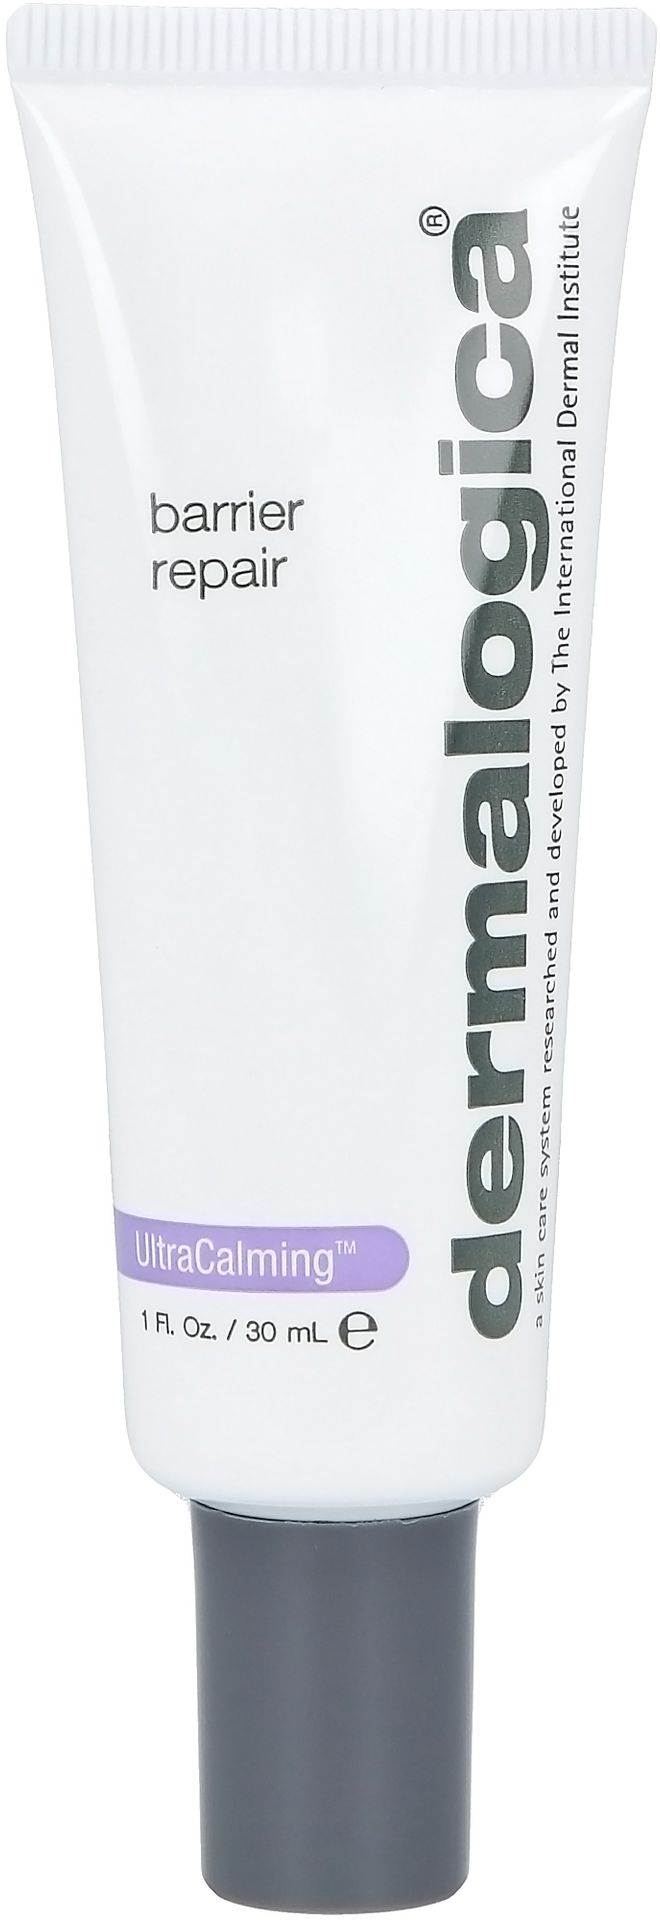 Dermalogica UltraCalming™ Barrier Repair krem do twarzy na dzień 30 ml dla kobiet